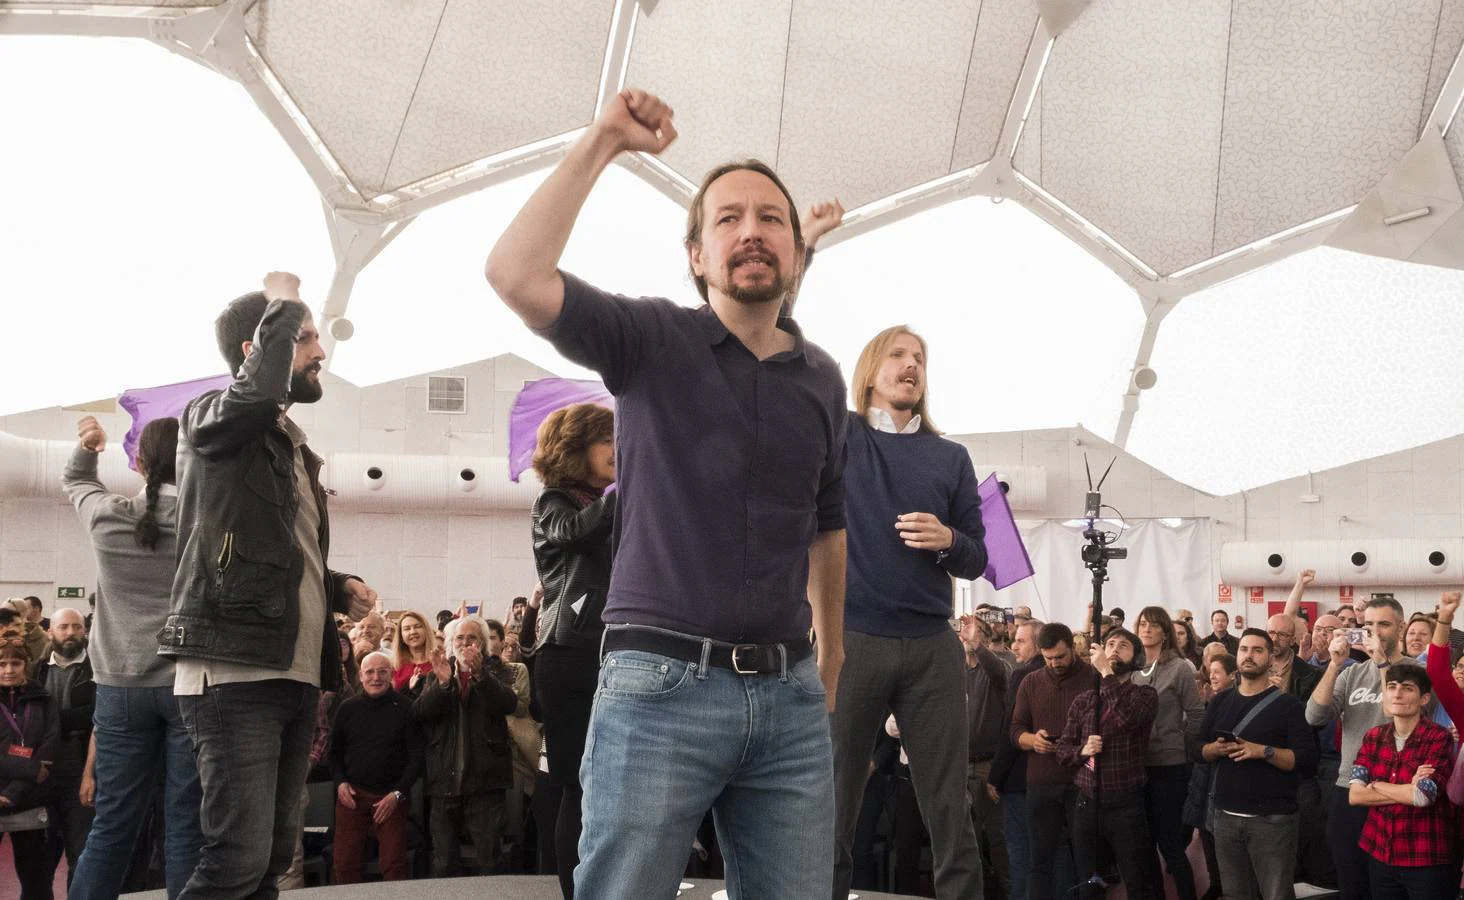 El candidato de Unidas Podemos al Gobierno ha llamado por segundo día consecutivo a frenar en las urnas a la formación ultraderechista